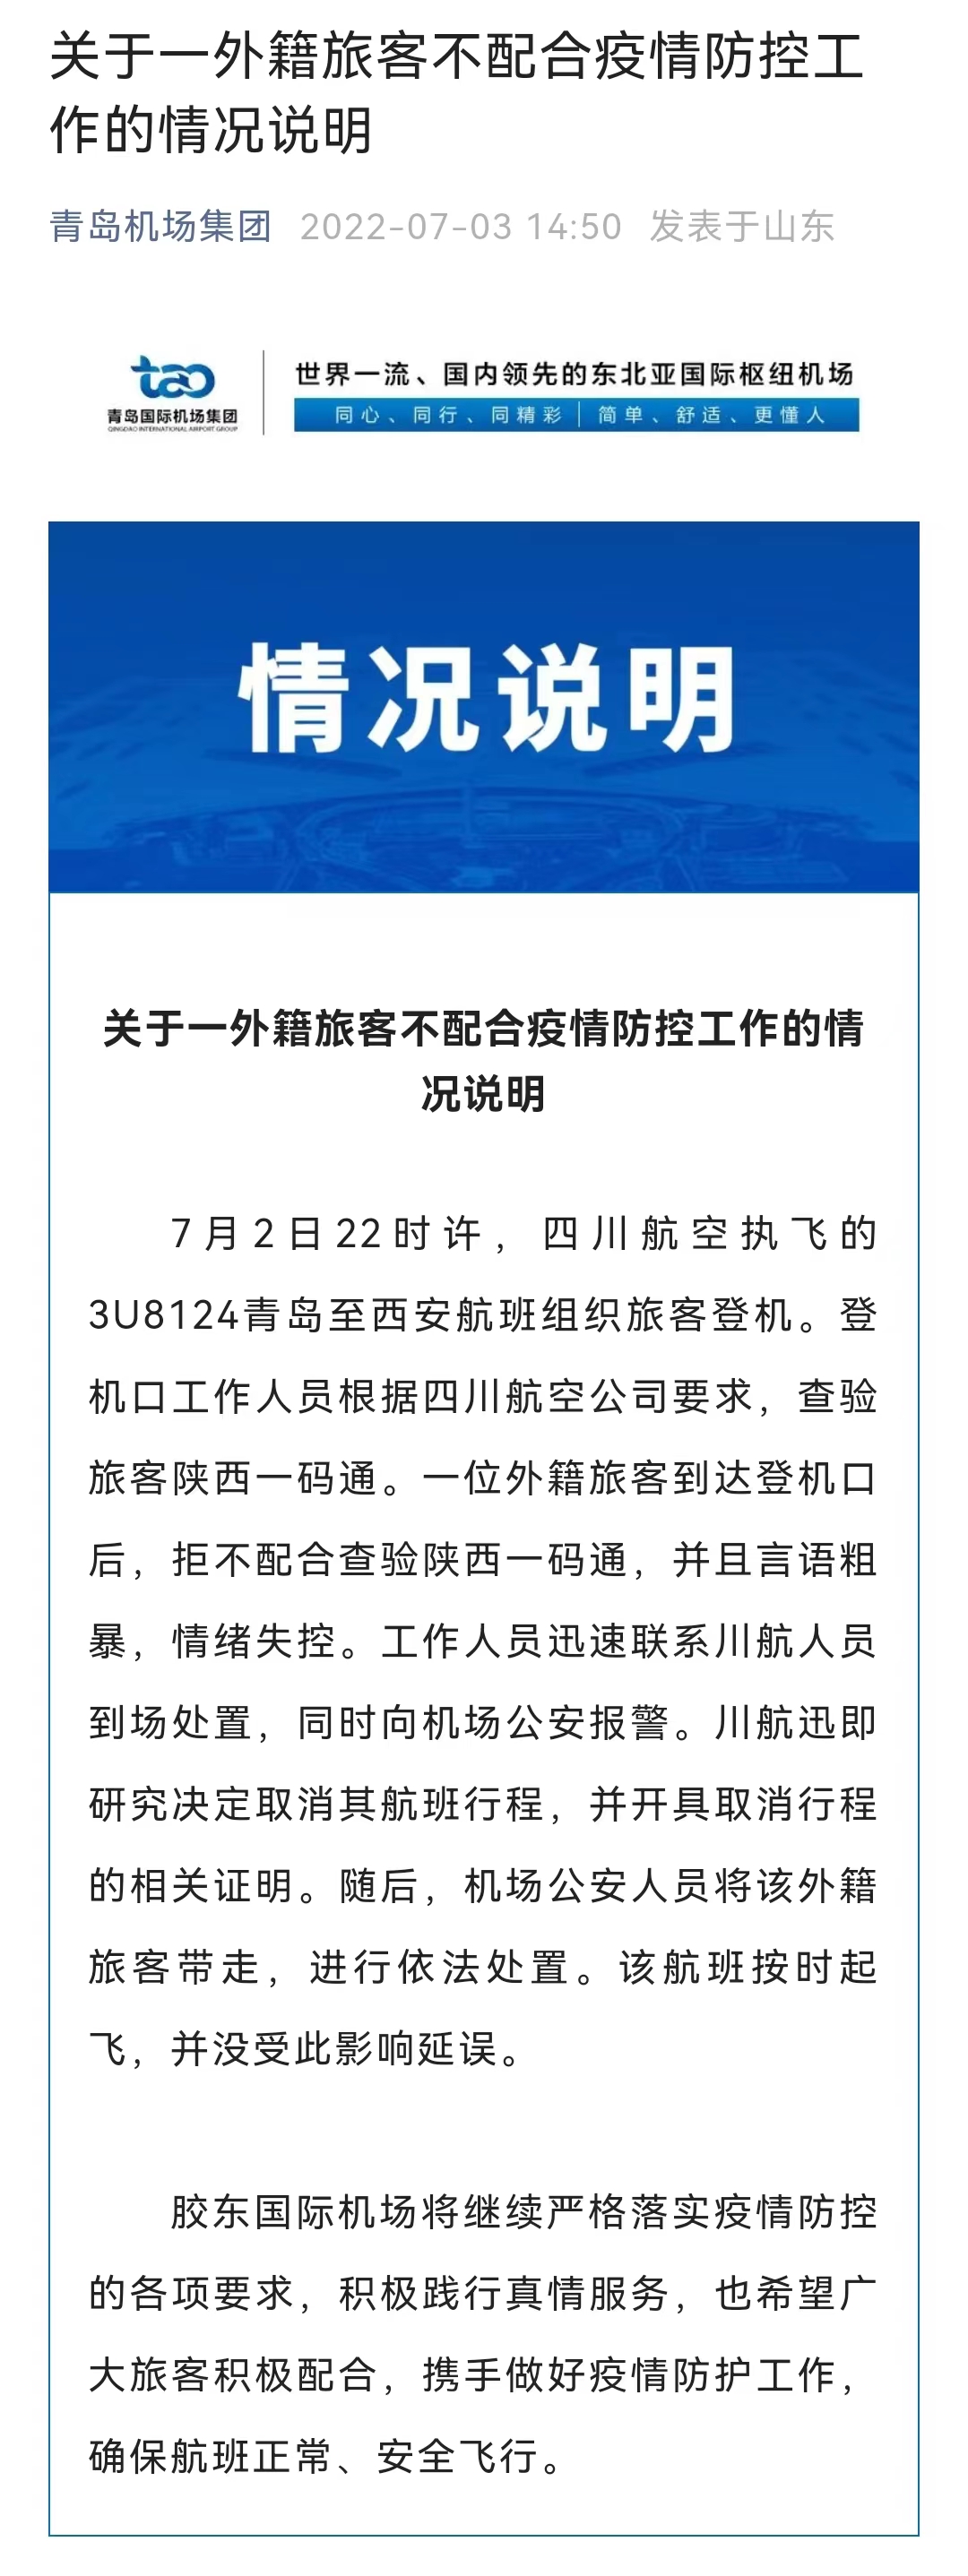 青岛机场通报外籍旅客不配合防疫：取消其航班行程，警方介入